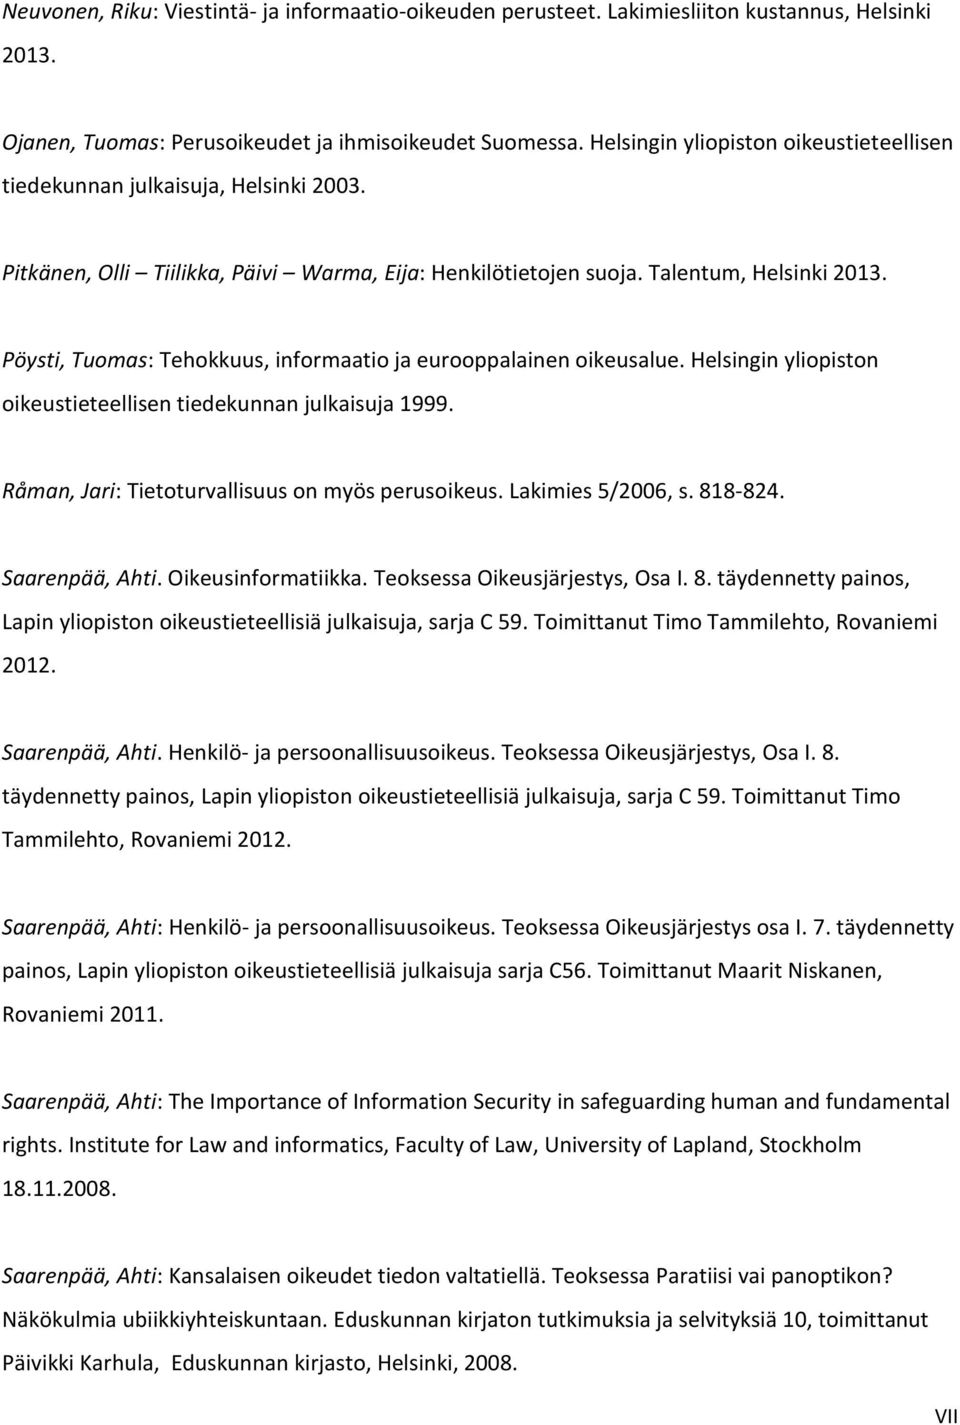 Pöysti, Tuomas: Tehokkuus, informaatio ja eurooppalainen oikeusalue. Helsingin yliopiston oikeustieteellisen tiedekunnan julkaisuja 1999. Råman, Jari: Tietoturvallisuus on myös perusoikeus.